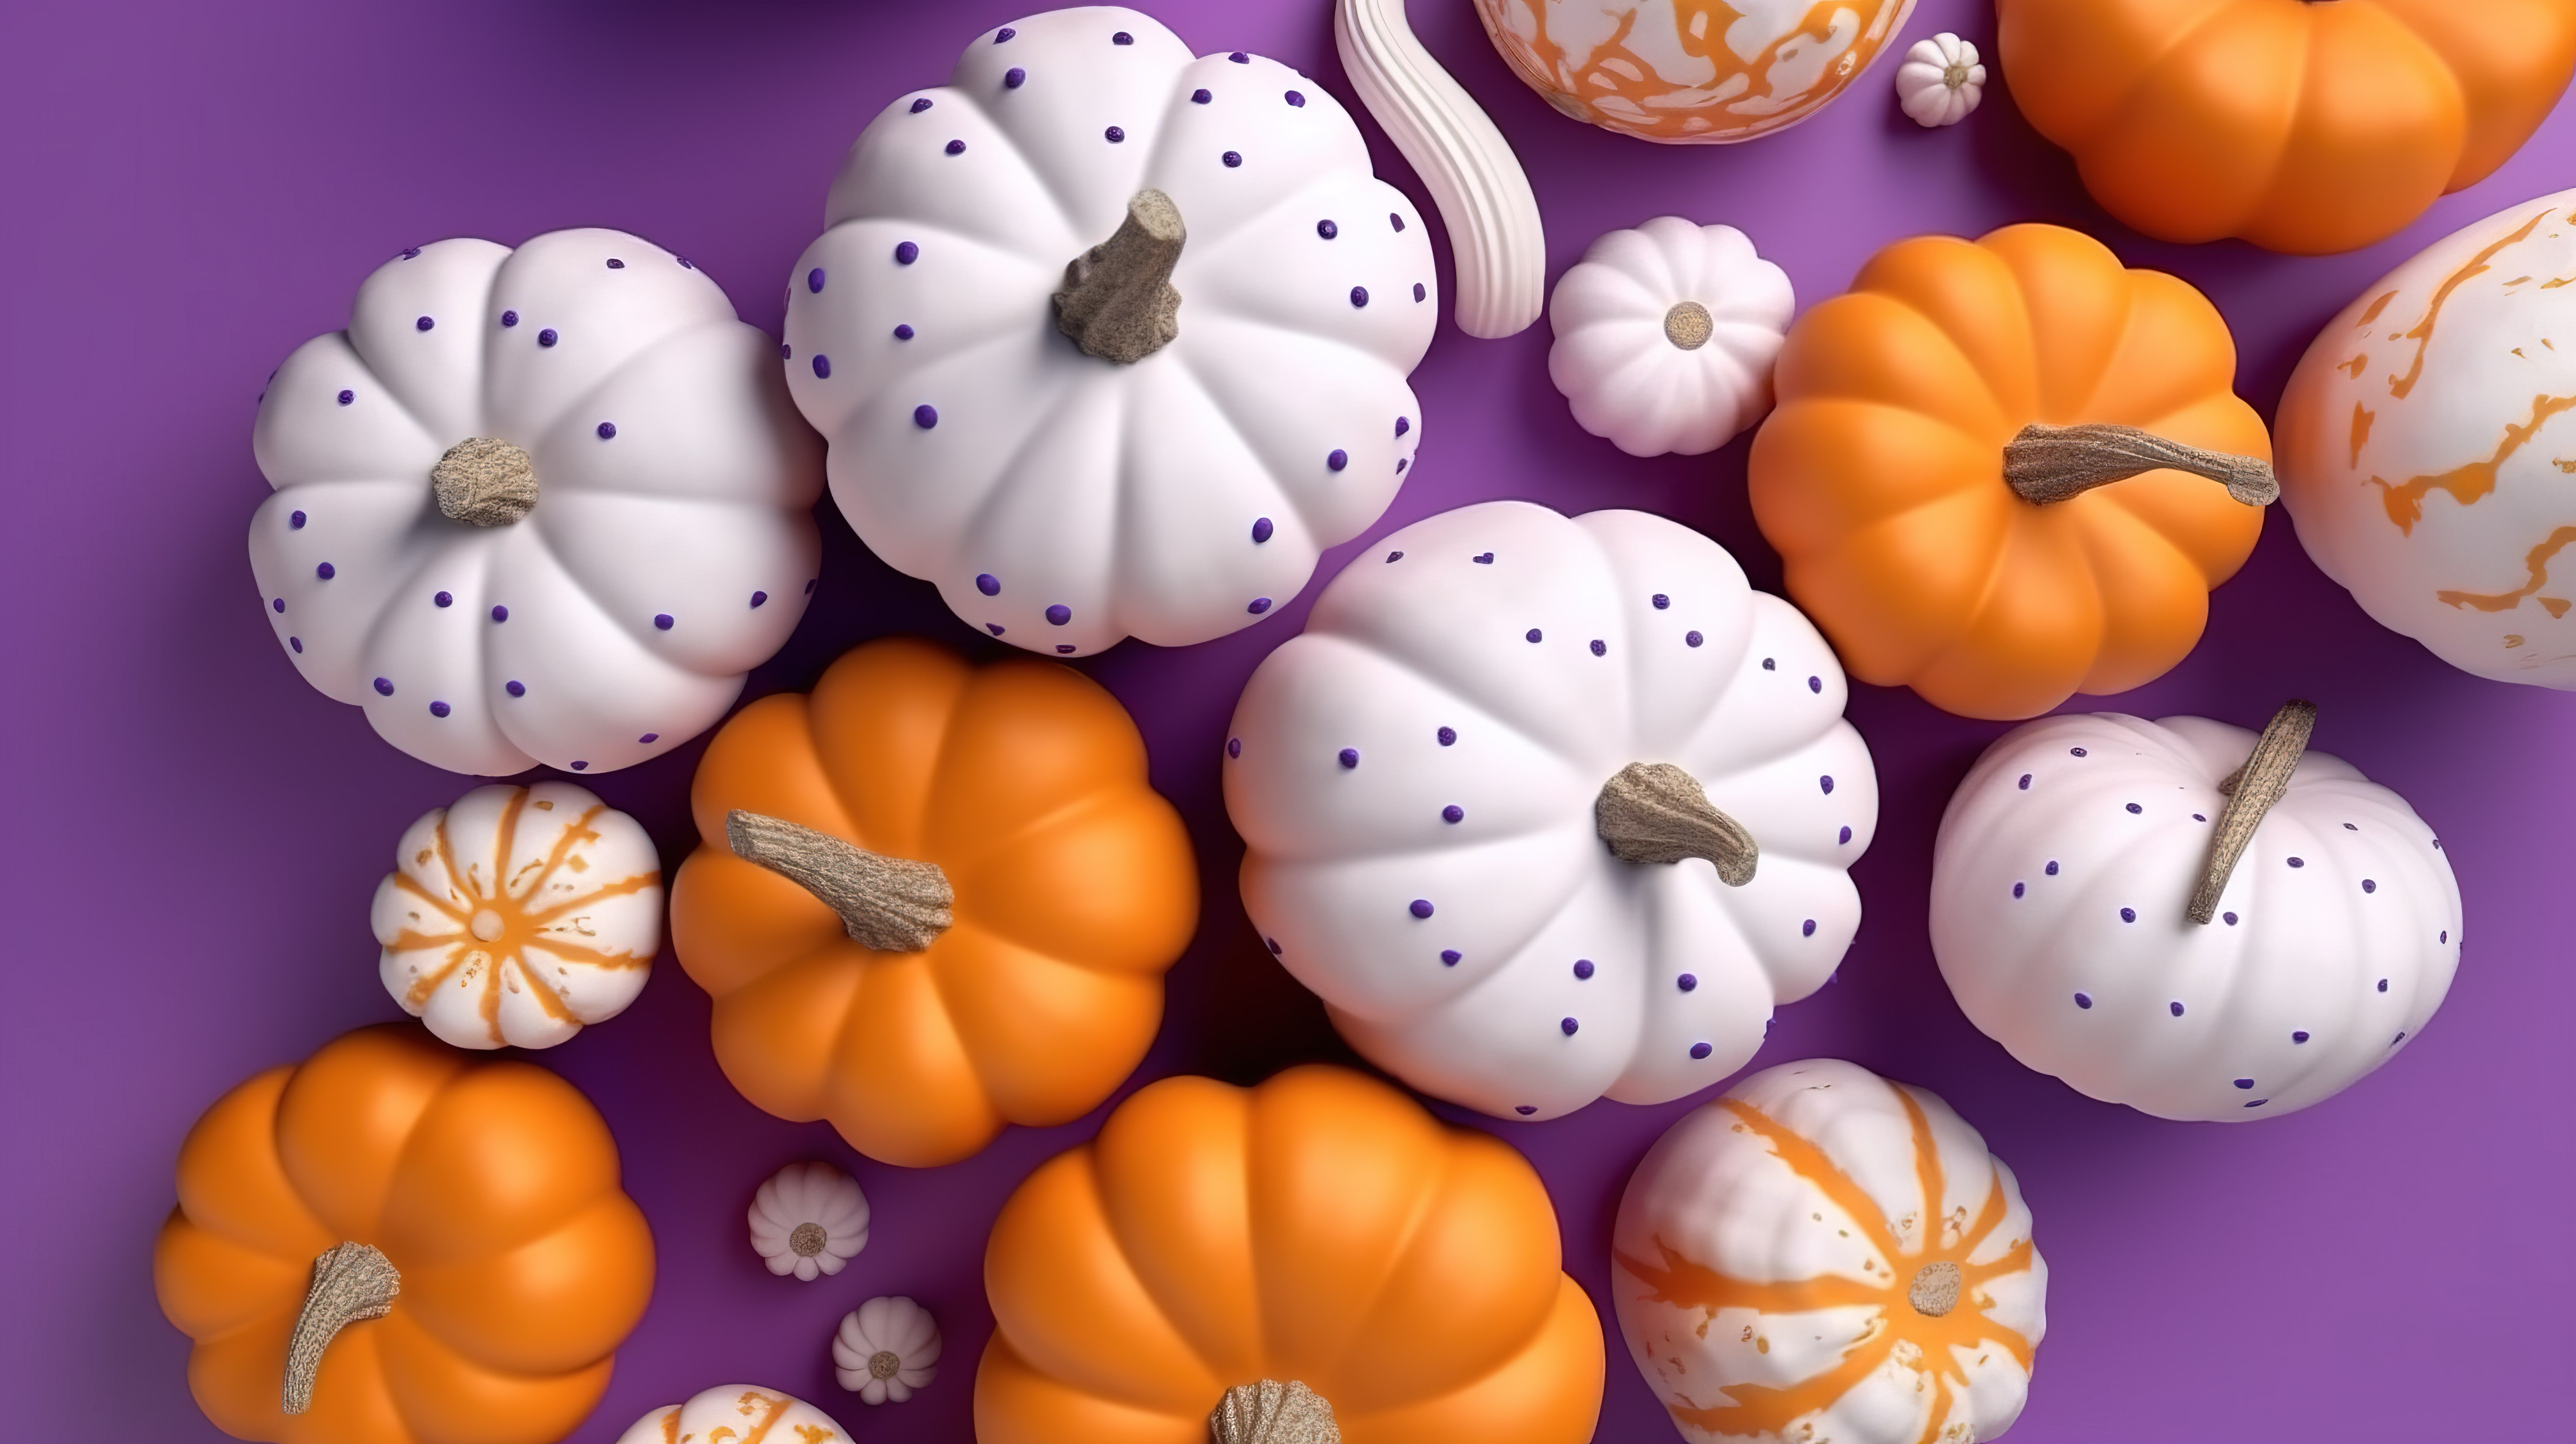 在充满活力的紫色背景下以 3D 形式呈现的橙色和白色南瓜平铺图片